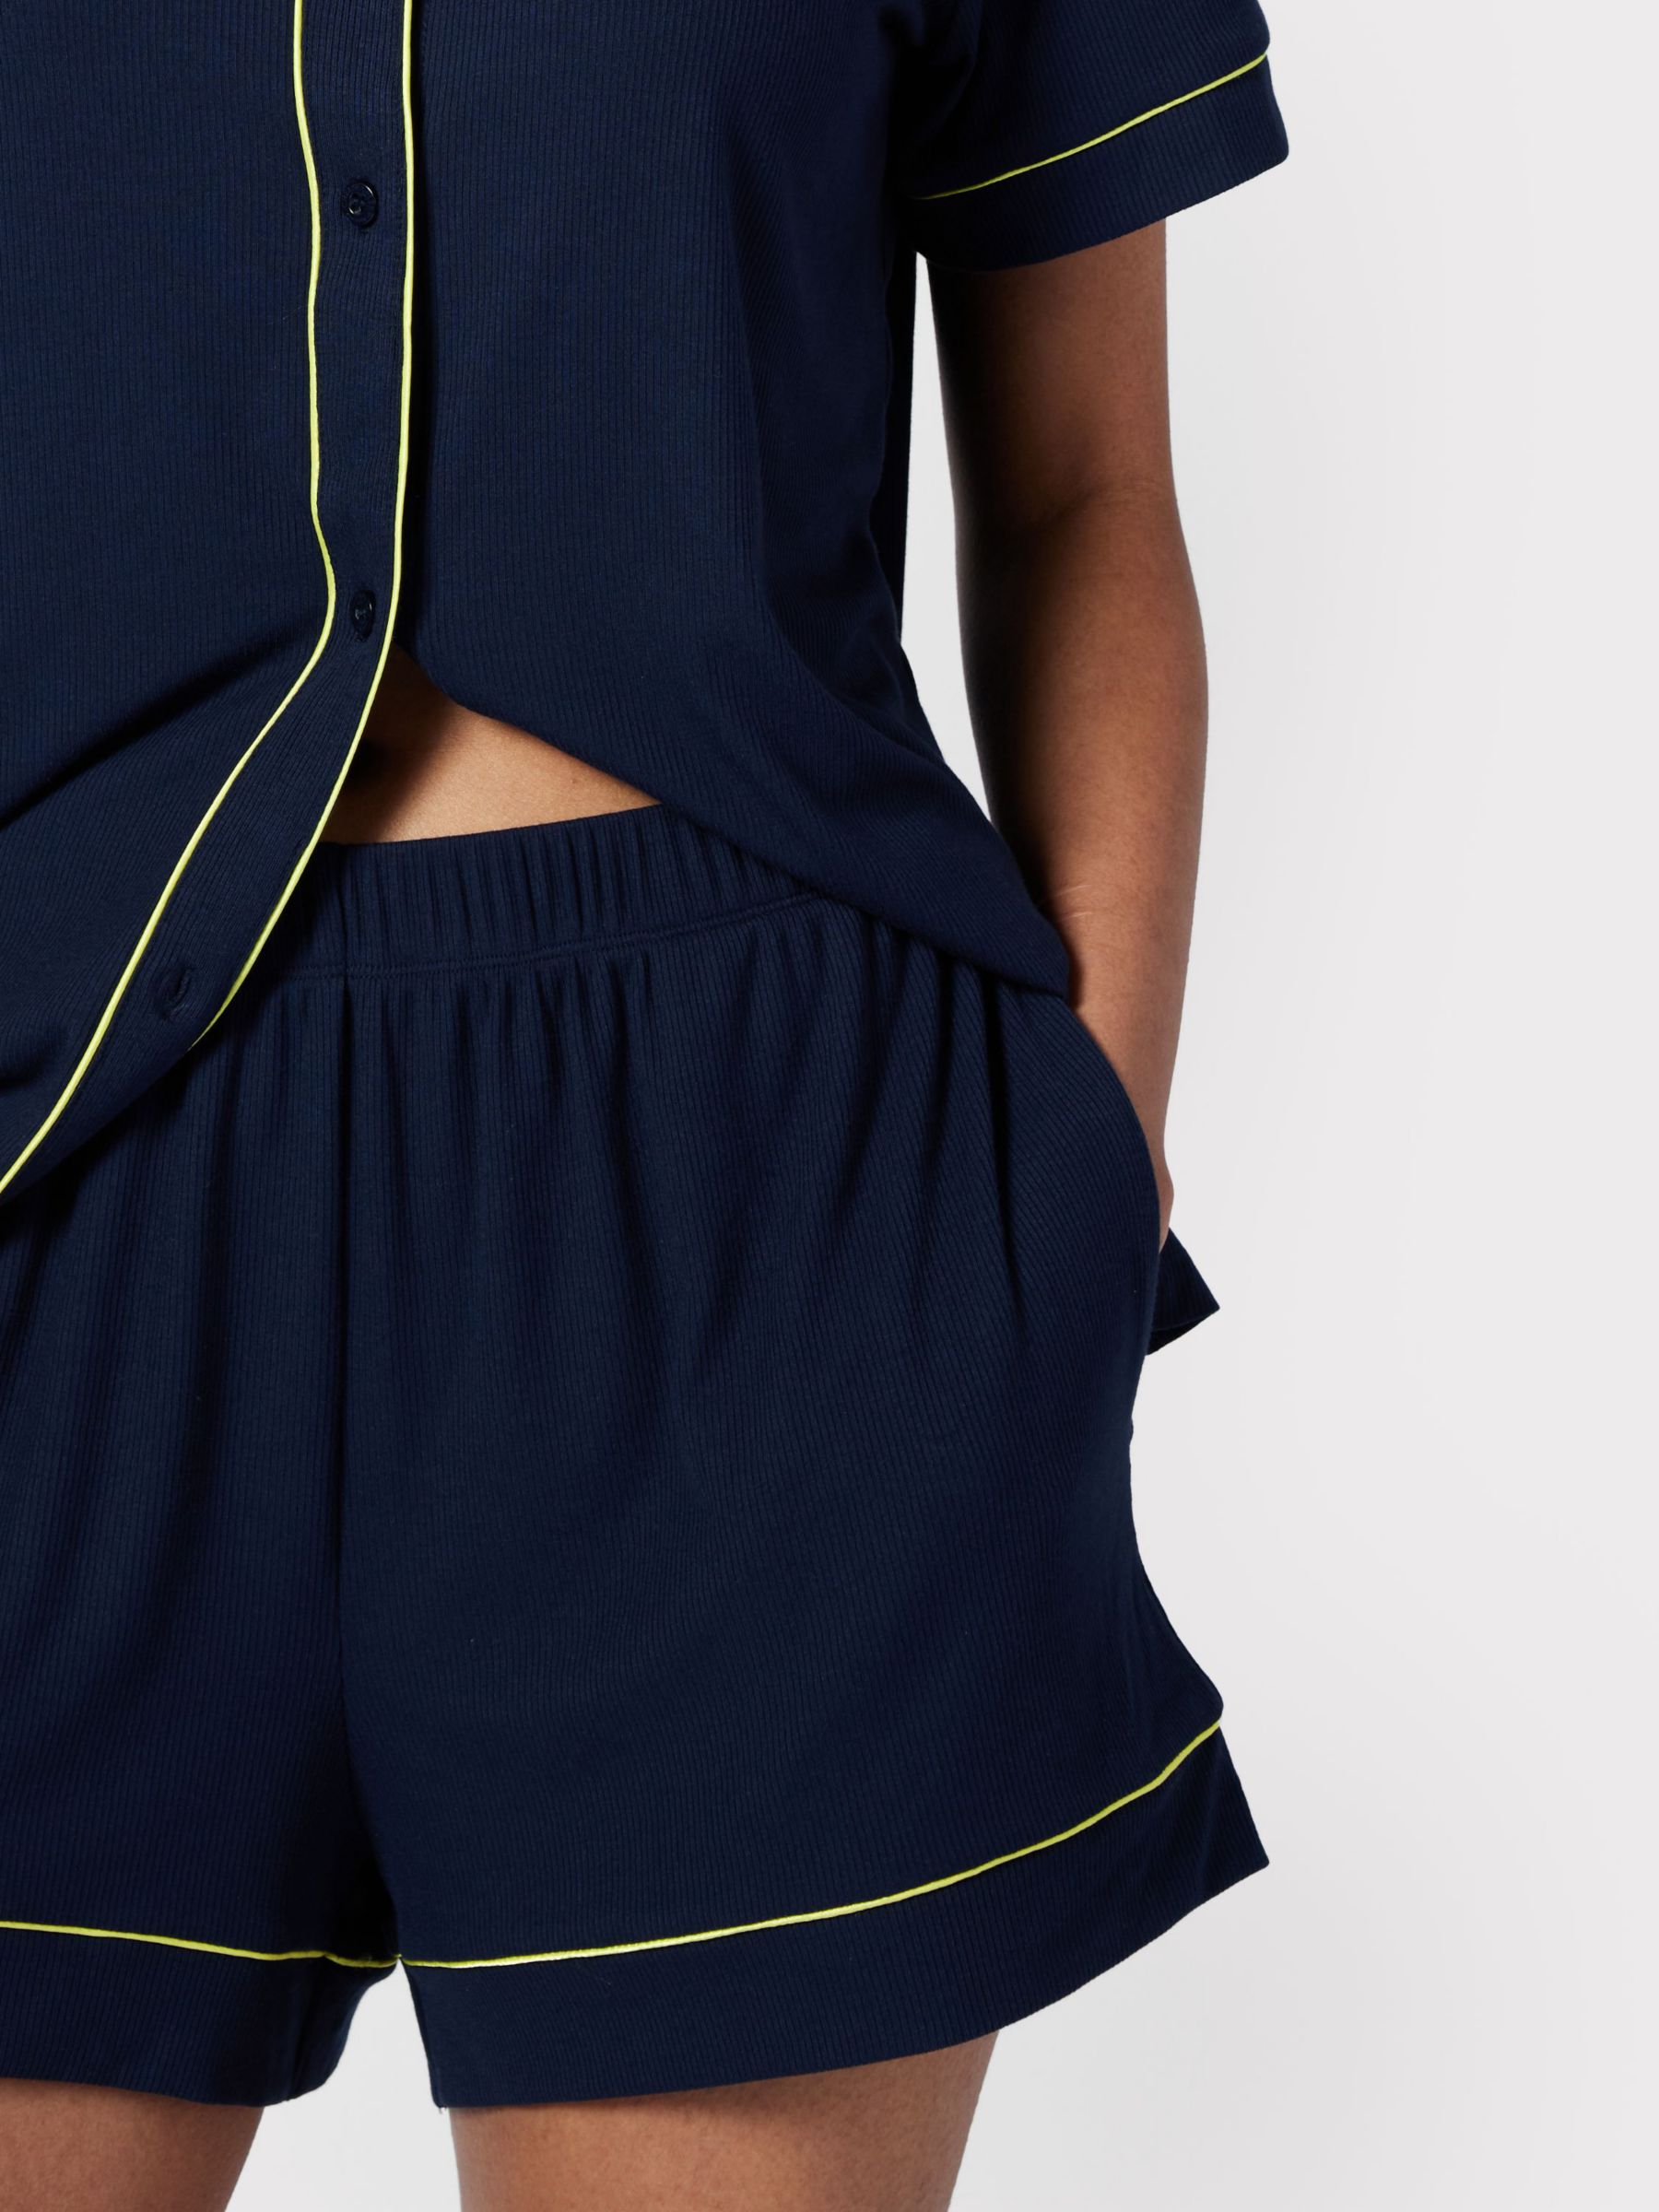 Buy Chelsea Peers Contrast Piping Short Pyjamas, Navy Online at johnlewis.com